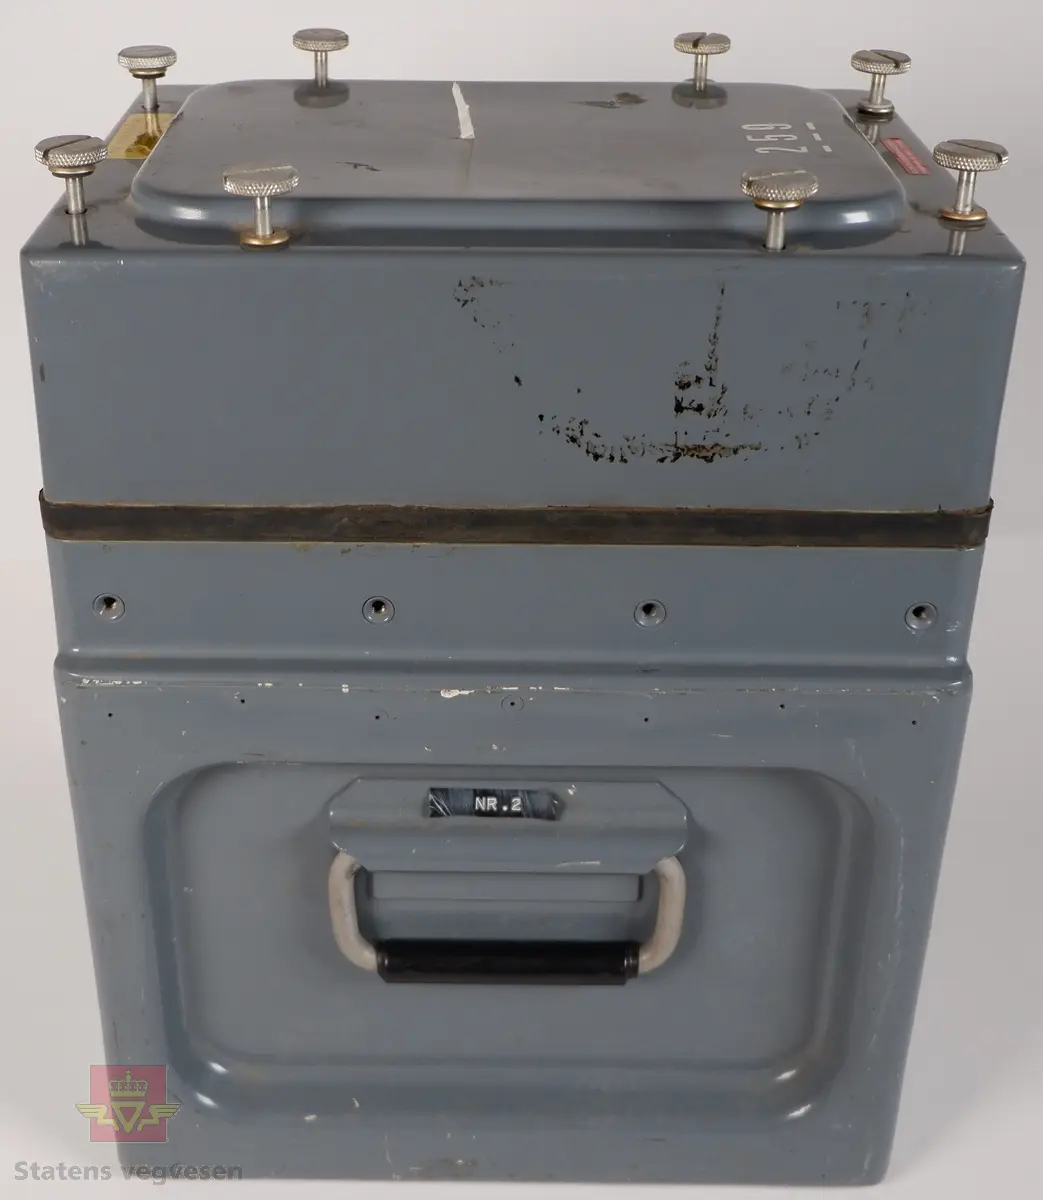 Vibrasjonsmåler i kasse av grålakkert metall. Kassen har lokk som er festet med skruer, og har påskriftene THIS COVER SCREW TO BE RELEASED BEFORE TRANSPORTING BY AIR, 259 og KONTOR FOR FJELLSPRENGNINGSTEKNIKK FORSKNINGSVN. 3B - OSLO 3 - TLF. 46 98 80, På undersiden av lokket er det teipet på et maskinskrevet ark som har påskriften VAKTHUND Ved kontroll: 1. Før strimmelen tas ut slåes inn dato og tid. 2. Vakthund slåes av og på (for å nullstille tidstellingen) 3. Slå inn dato - tid og instrumentnr. på strimmelen som blir sittende. 4. Husk å slå av bryteren på regnemaskinen. Rystelsesmåleren har to punkter for tilkobling med kabel, og kalkulator med skriver merket MONROE 10. Kalkulatoren har en håndskrevet klistrelapp som er påført datoer for bytte av batterier.